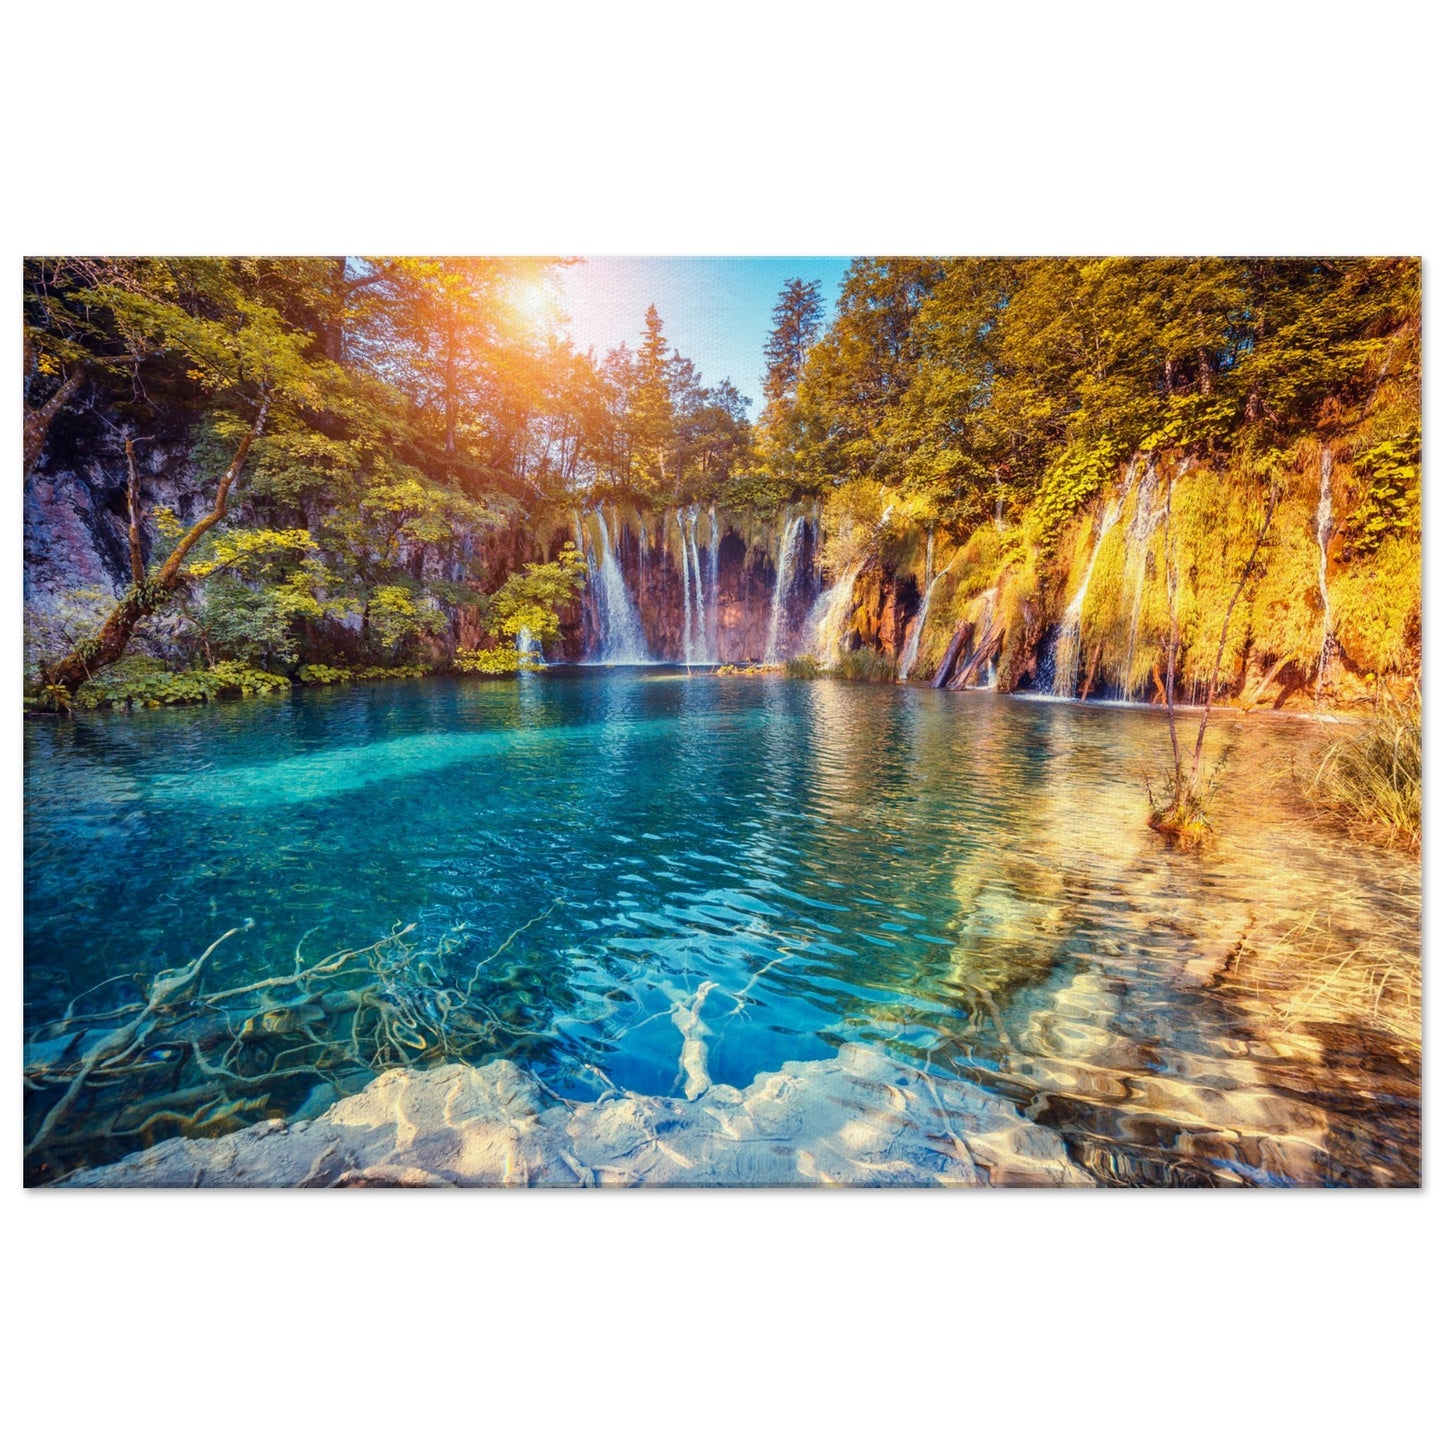 Waterfall And Lake In Croatia